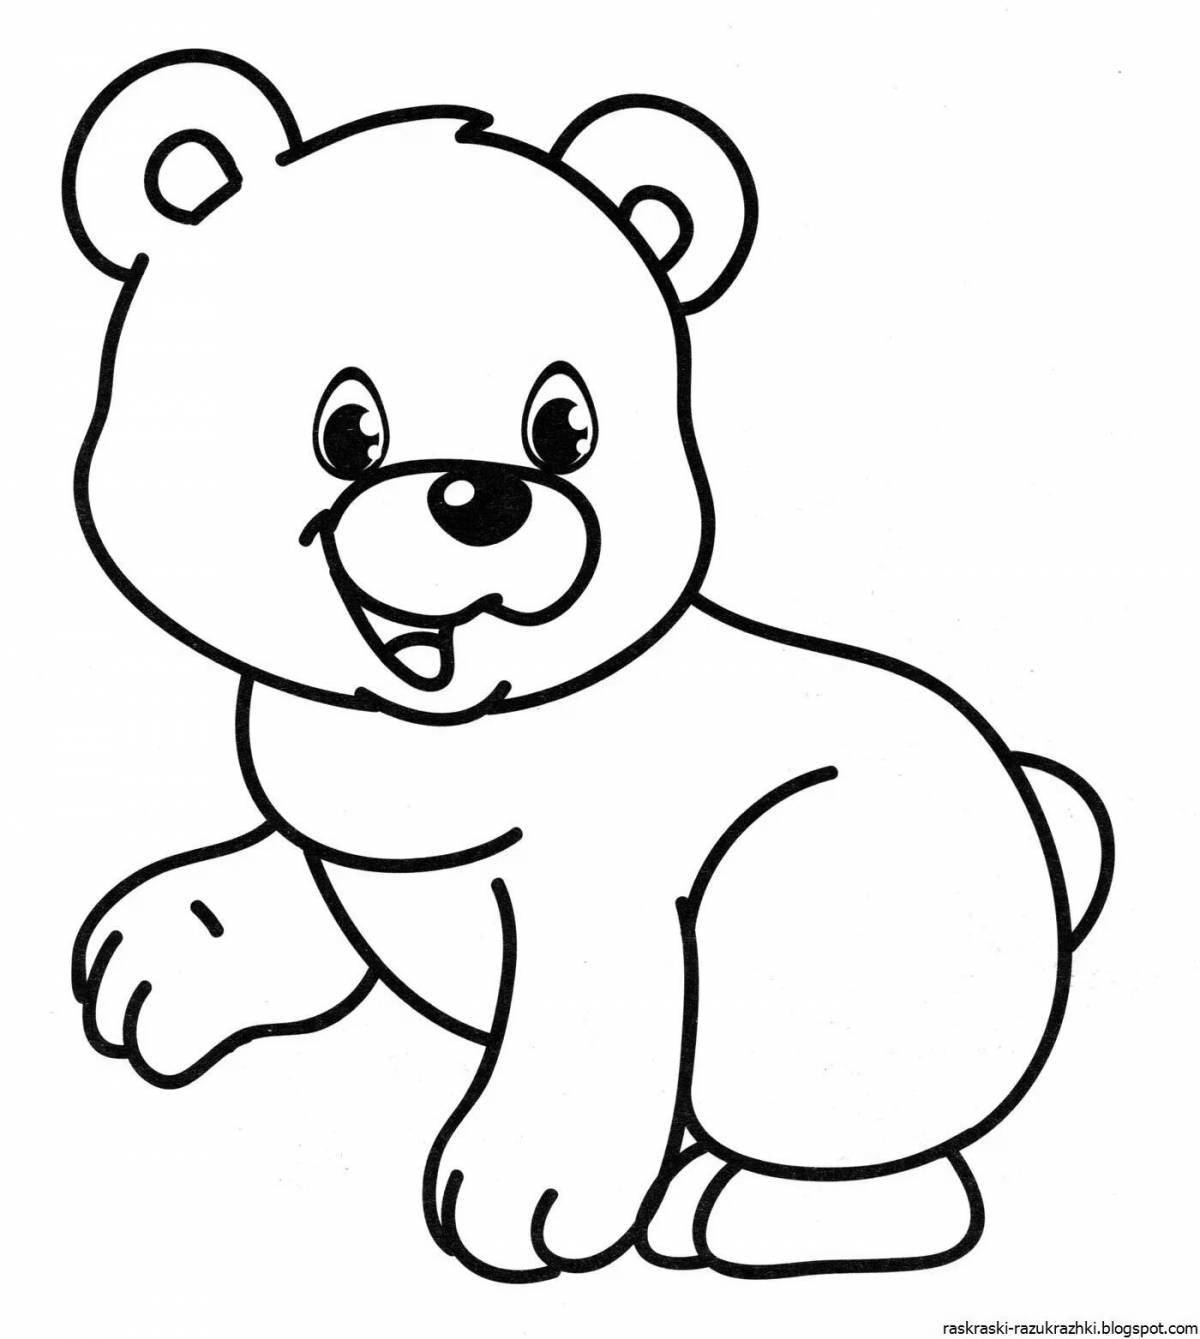 Великолепный медвежонок-раскраска для детей 2-3 лет